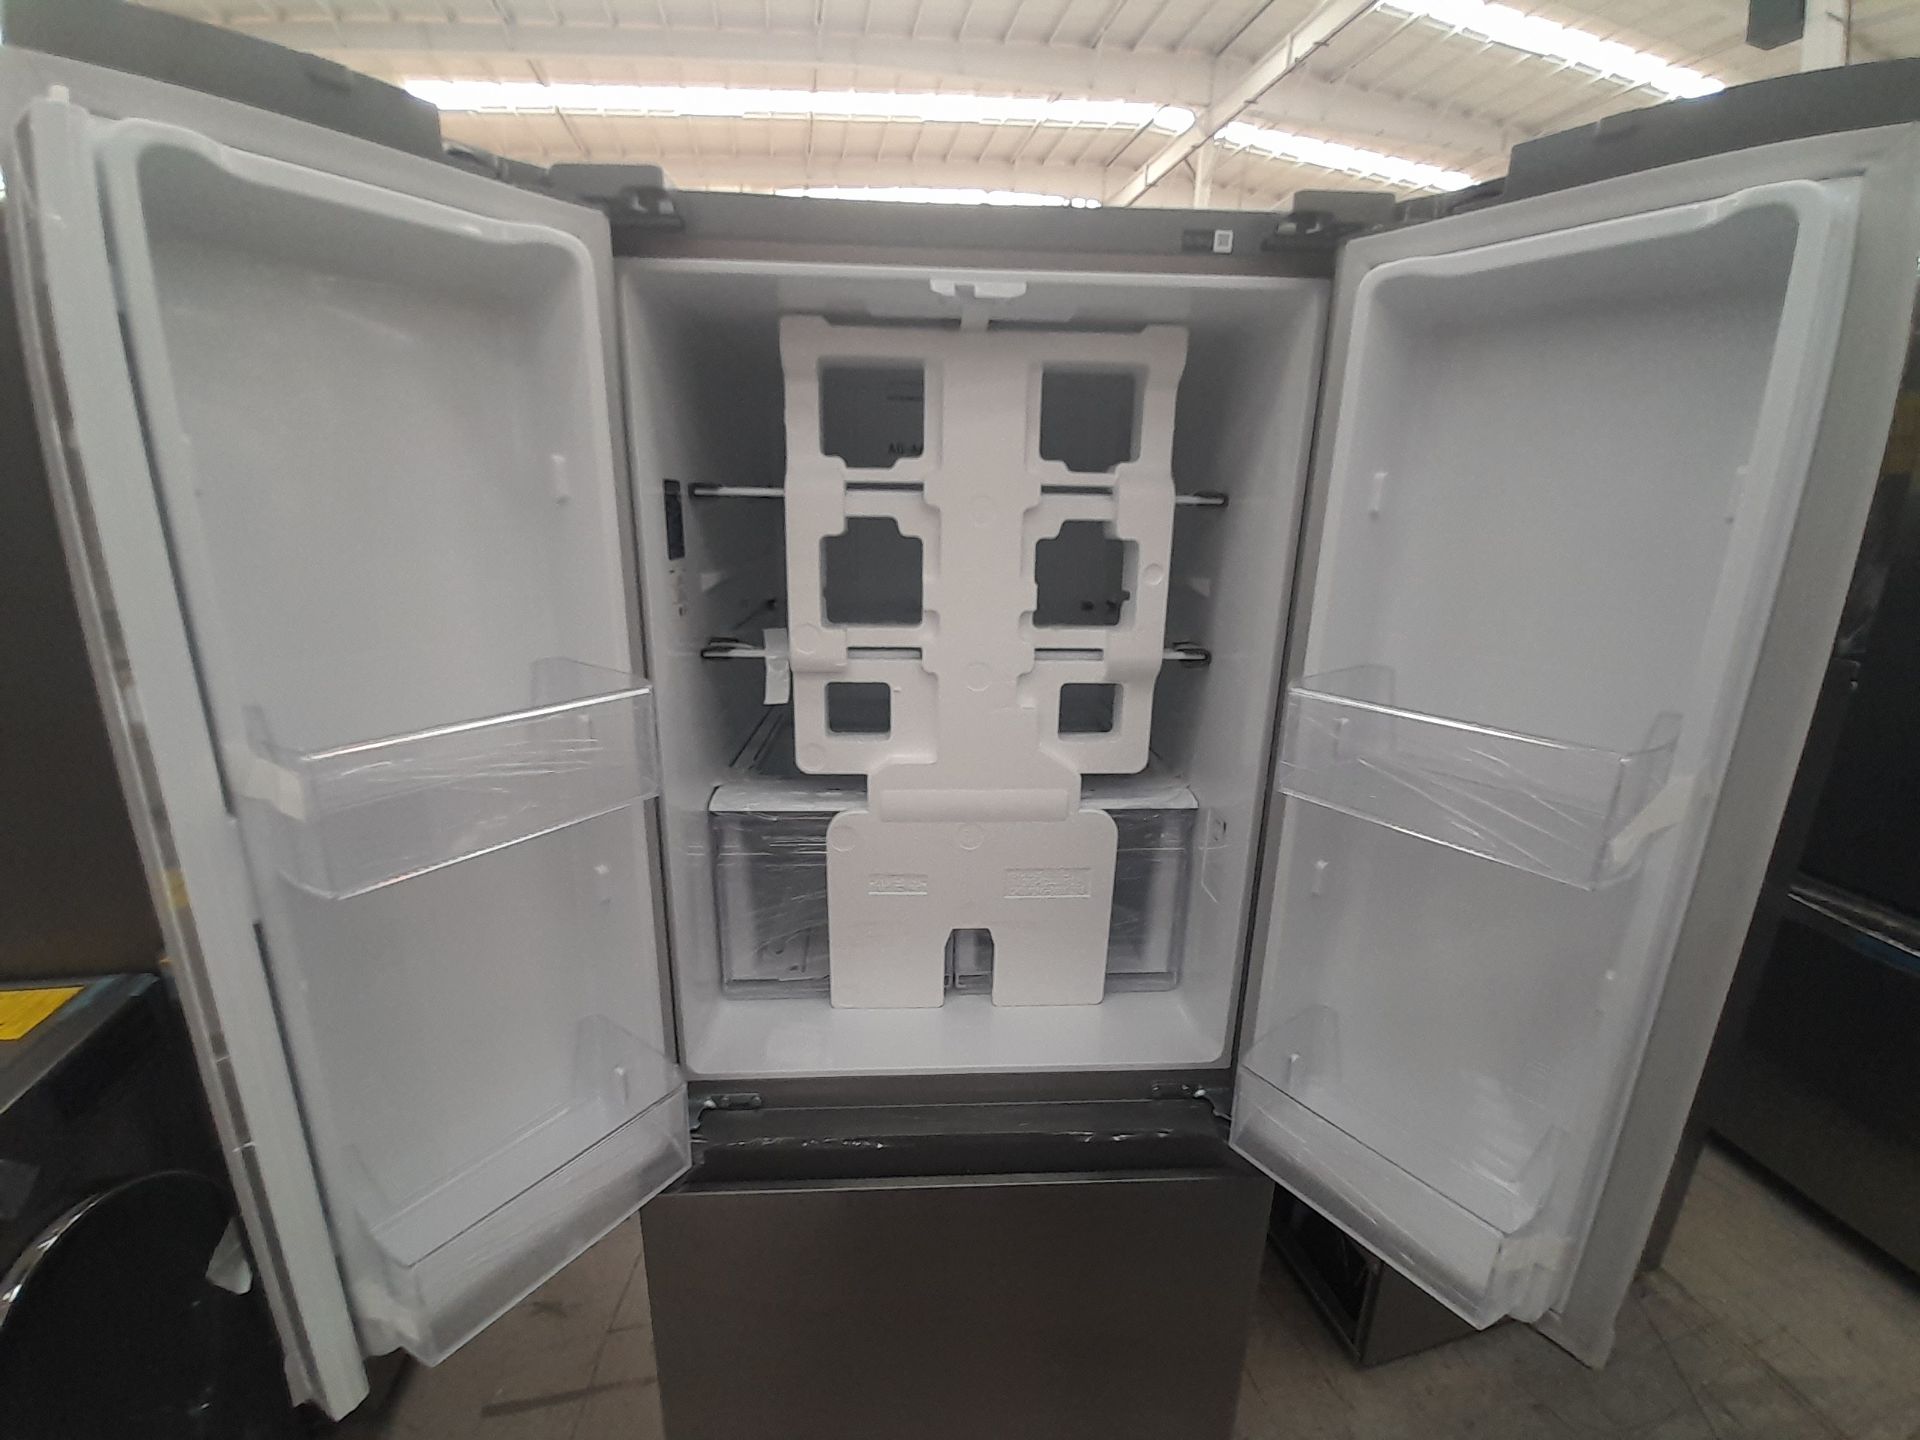 (NUEVO) Lote de 1 Refrigerador Marca SAMSUNG, Modelo RF22A4010S9, Color GRIS. - Image 4 of 5